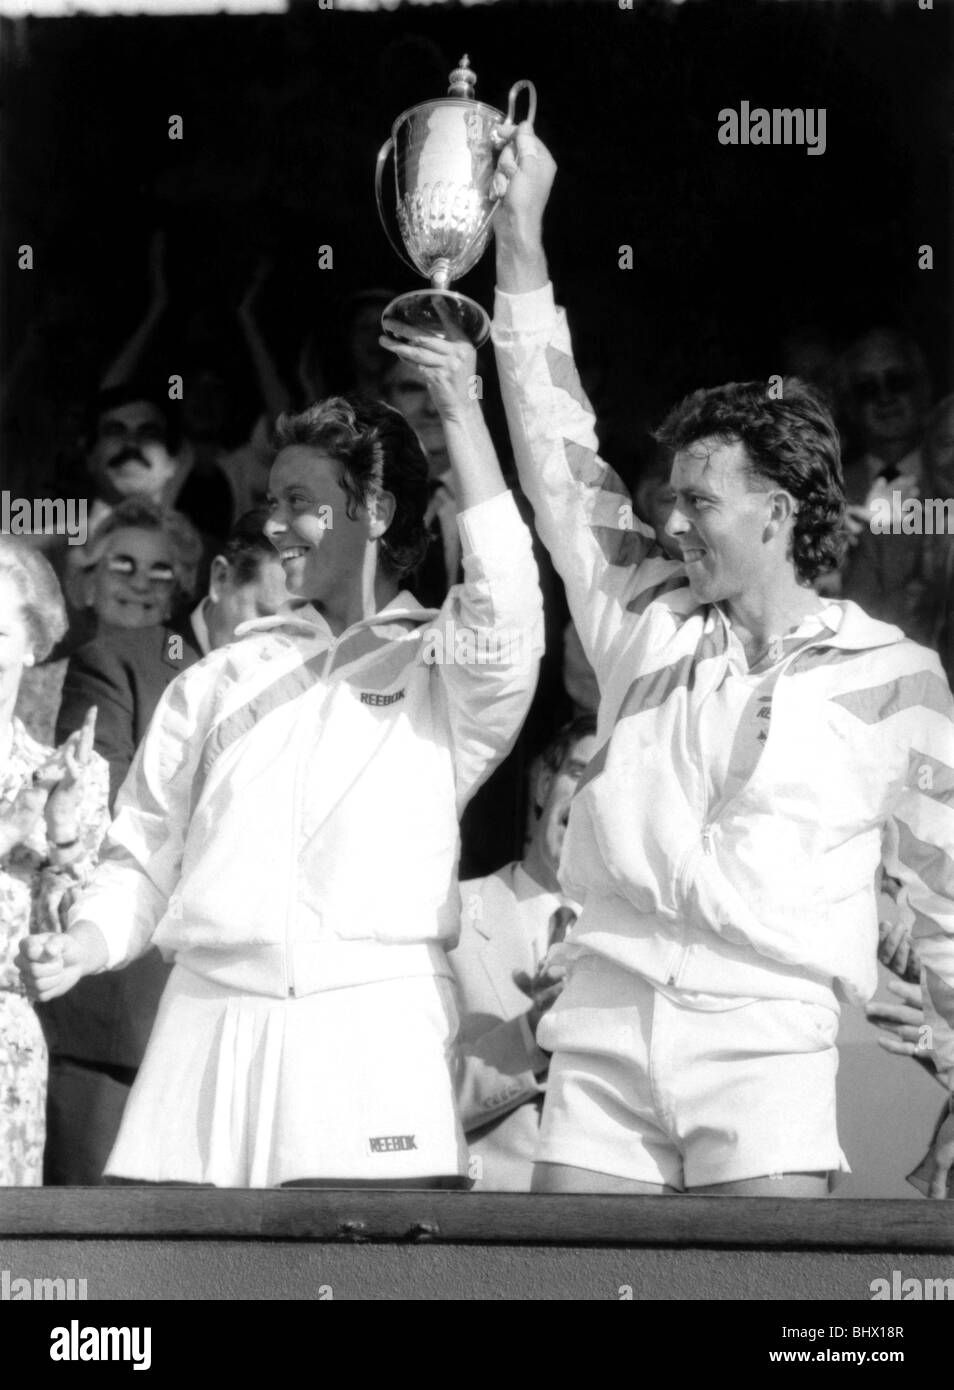 Jo Durie et Jeremy Bates gagner le double mixte pour la Grande-Bretagne. Juillet 1987 P017156 Banque D'Images